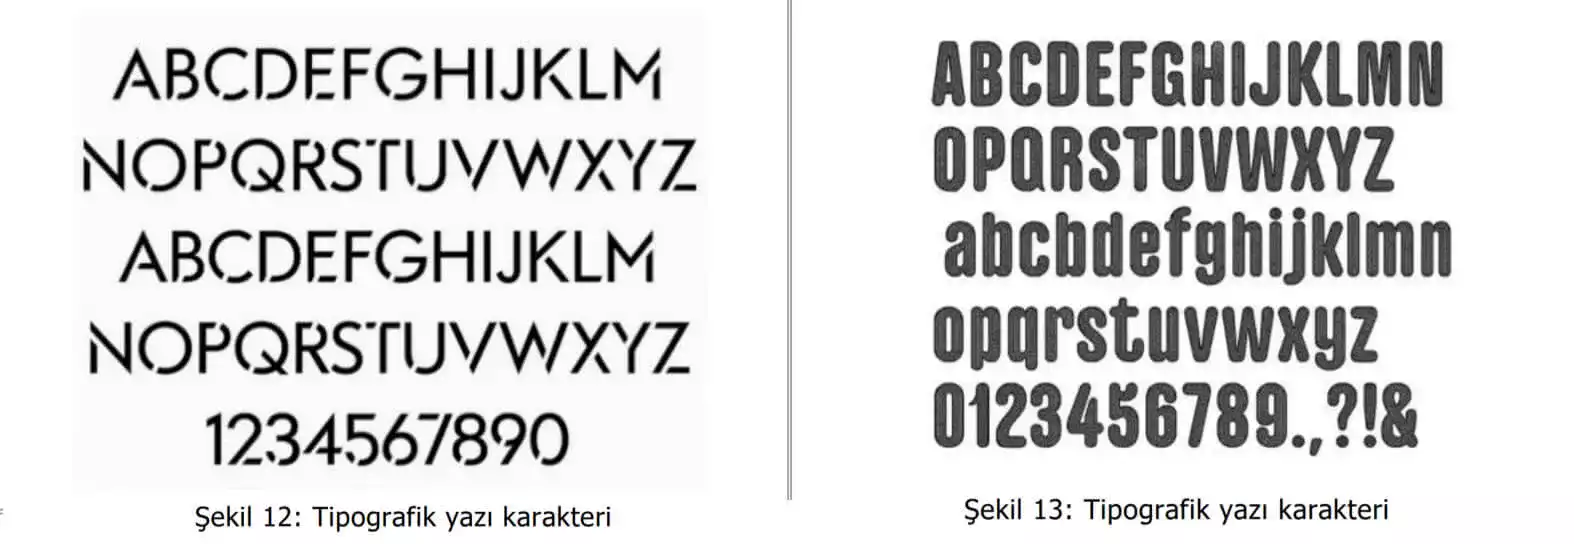 tipografik yazı karakter örnekleri-Zeytinburnu Patent